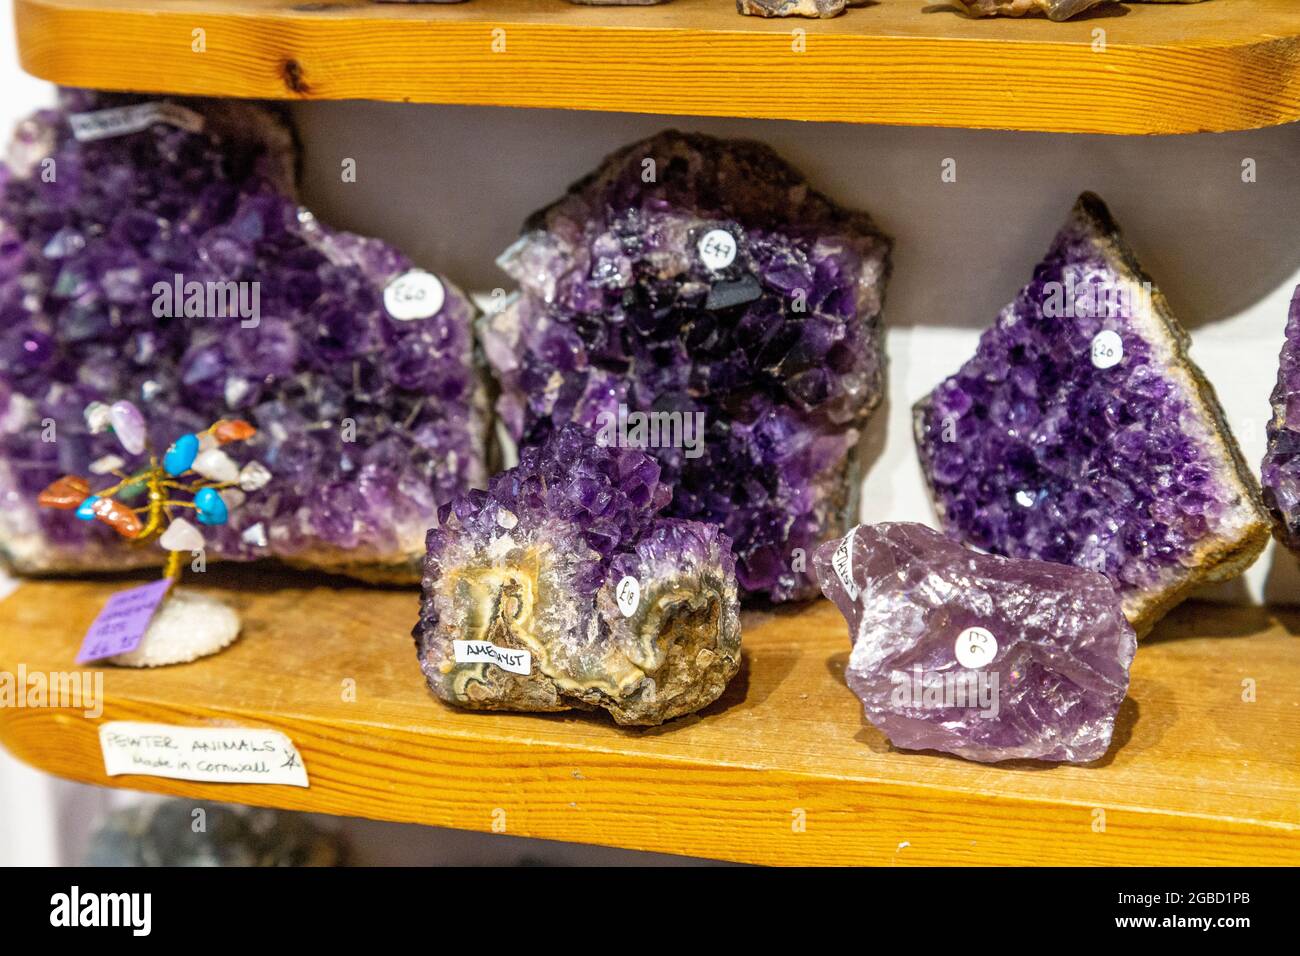 Display of amethyst crystals at Emjems crystal and gem shop, St Ives, Cornwall, UK Stock Photo